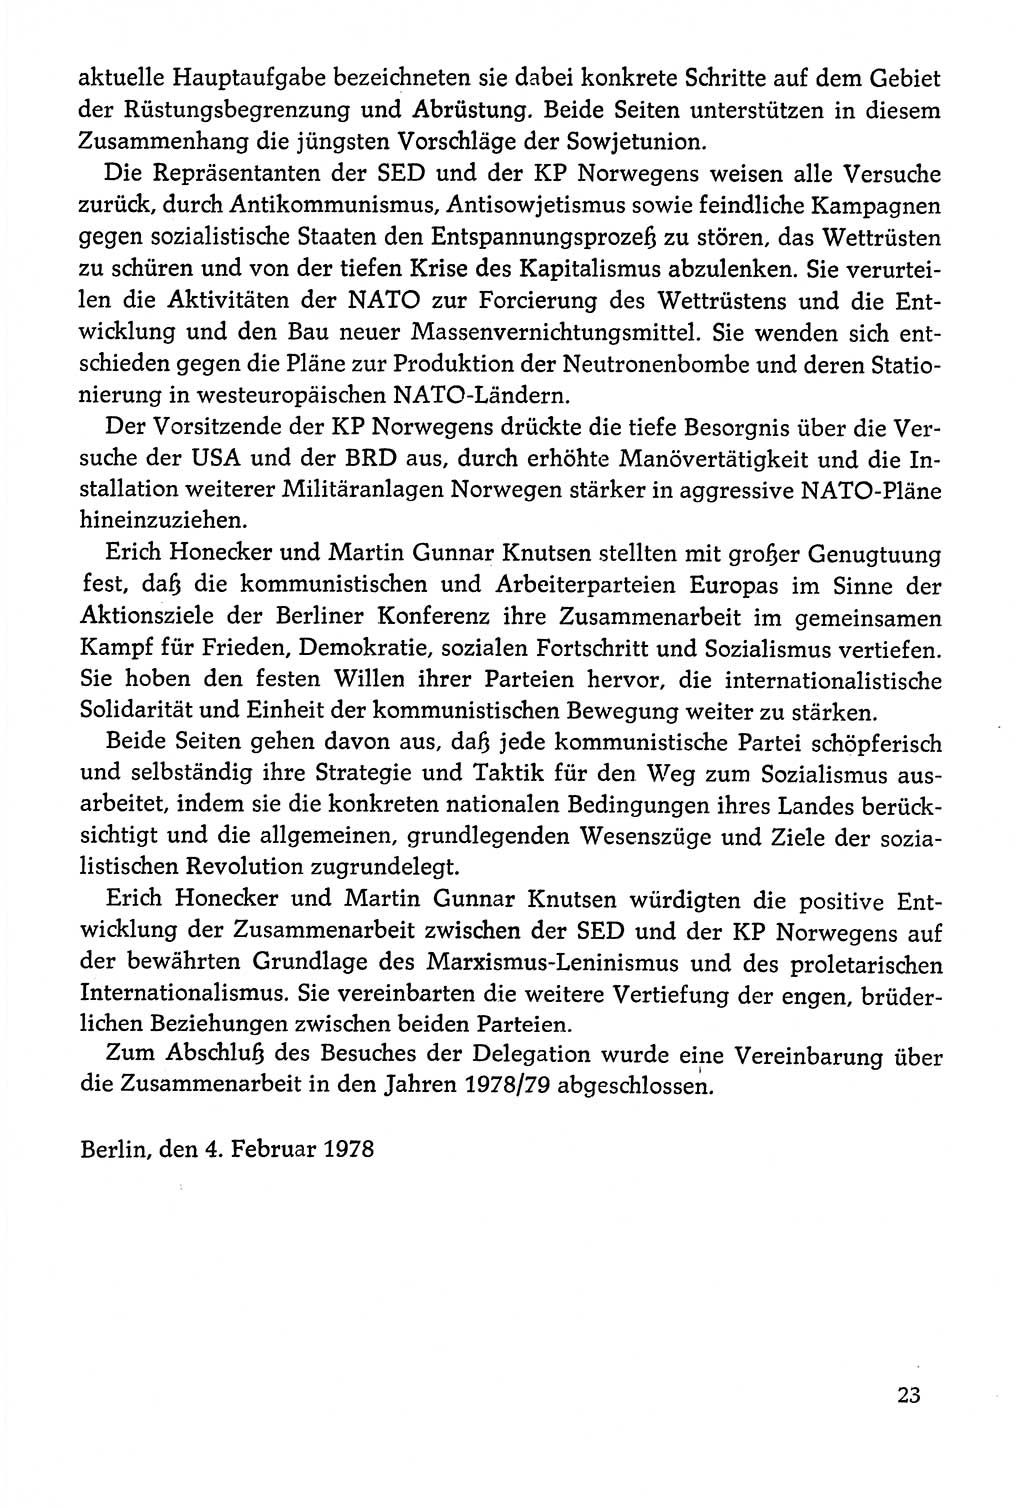 Dokumente der Sozialistischen Einheitspartei Deutschlands (SED) [Deutsche Demokratische Republik (DDR)] 1978-1979, Seite 23 (Dok. SED DDR 1978-1979, S. 23)